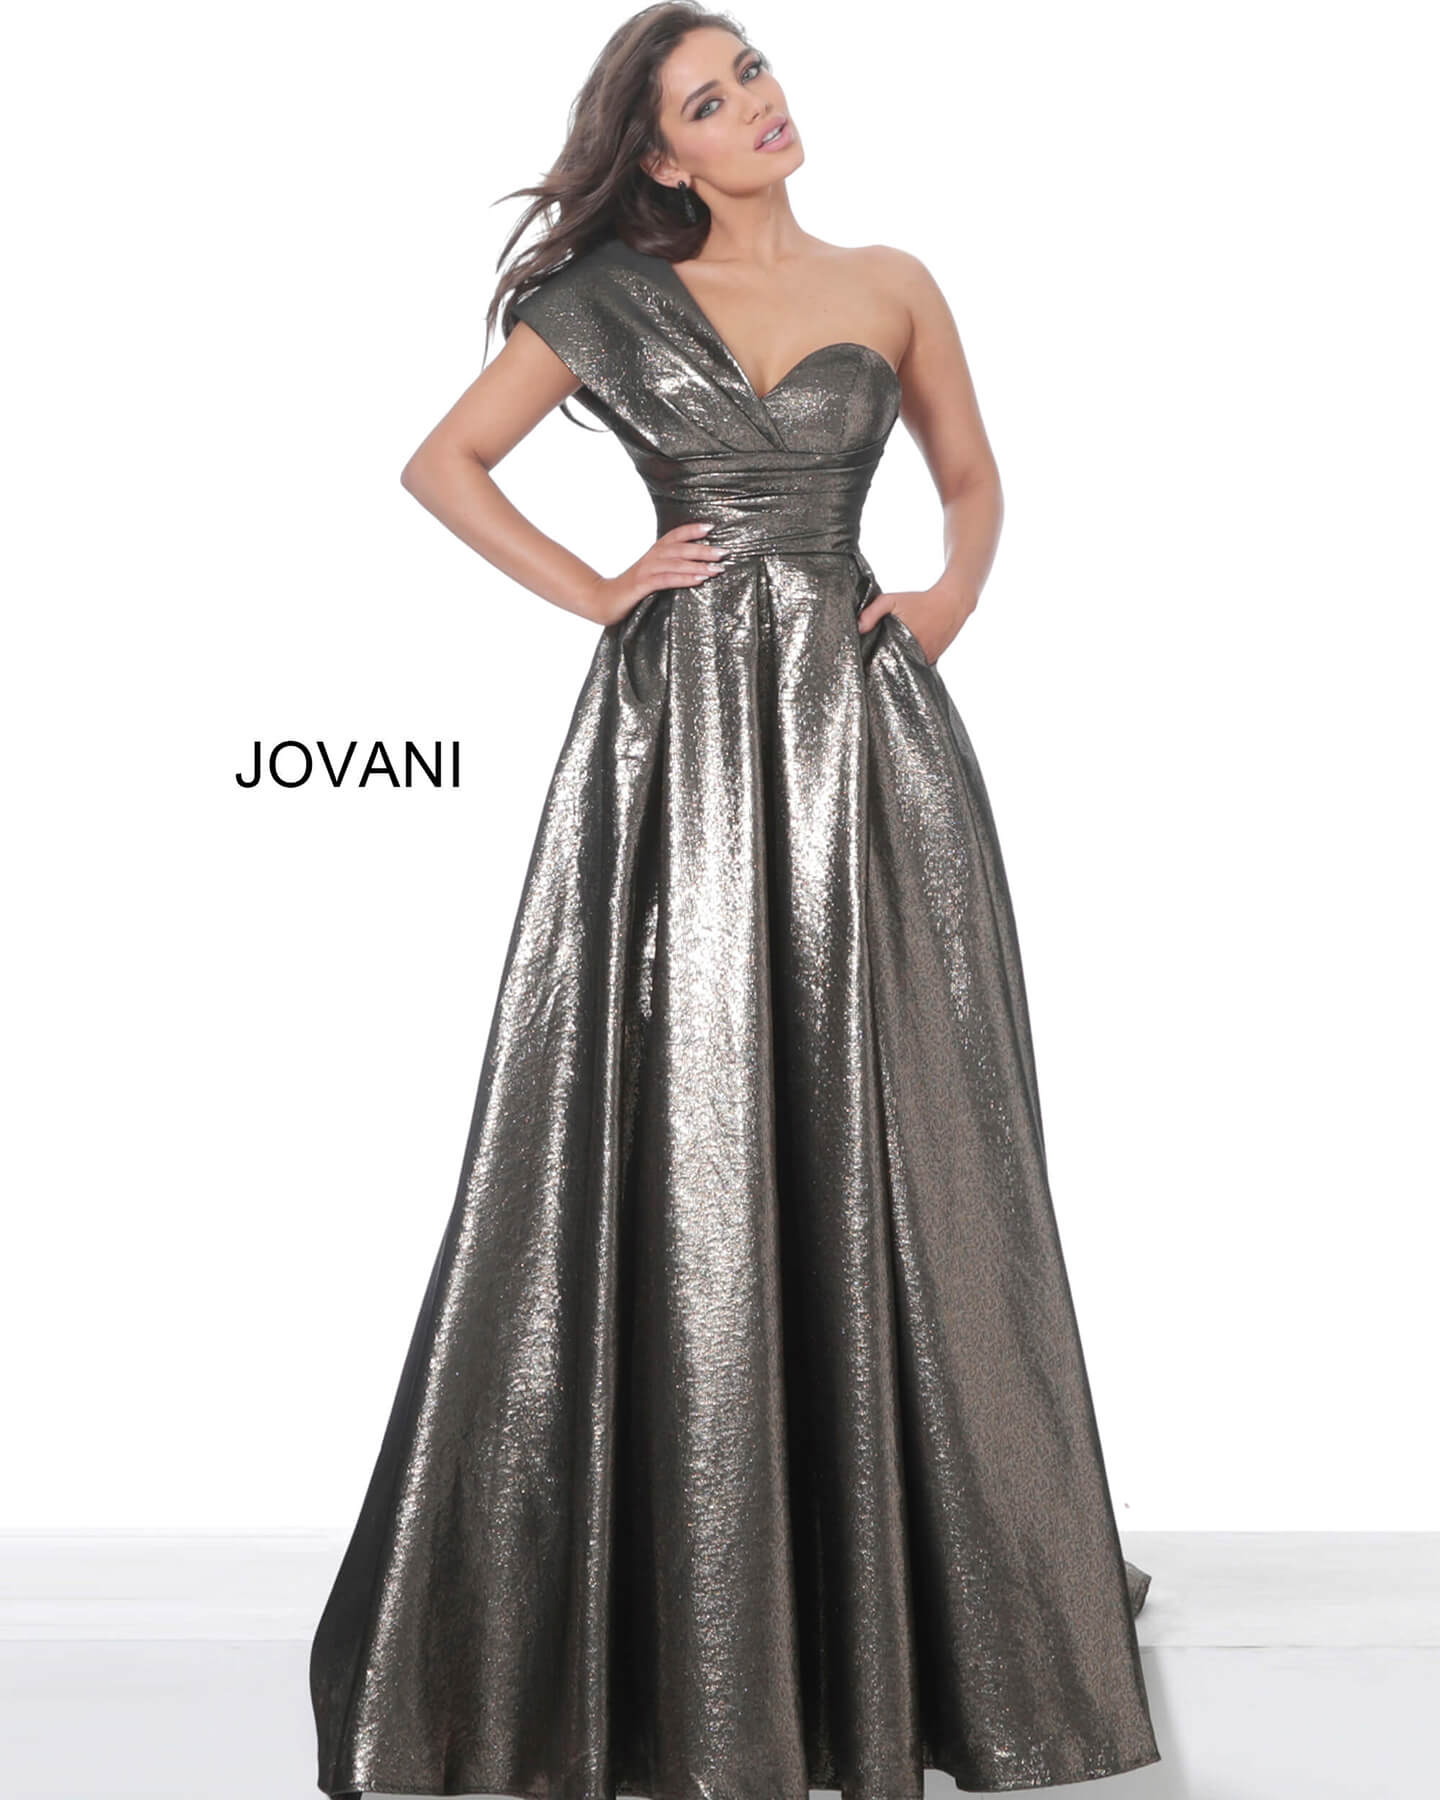 Jovani 04170 Bronze Metallic One Shoulder Evening Ballgown